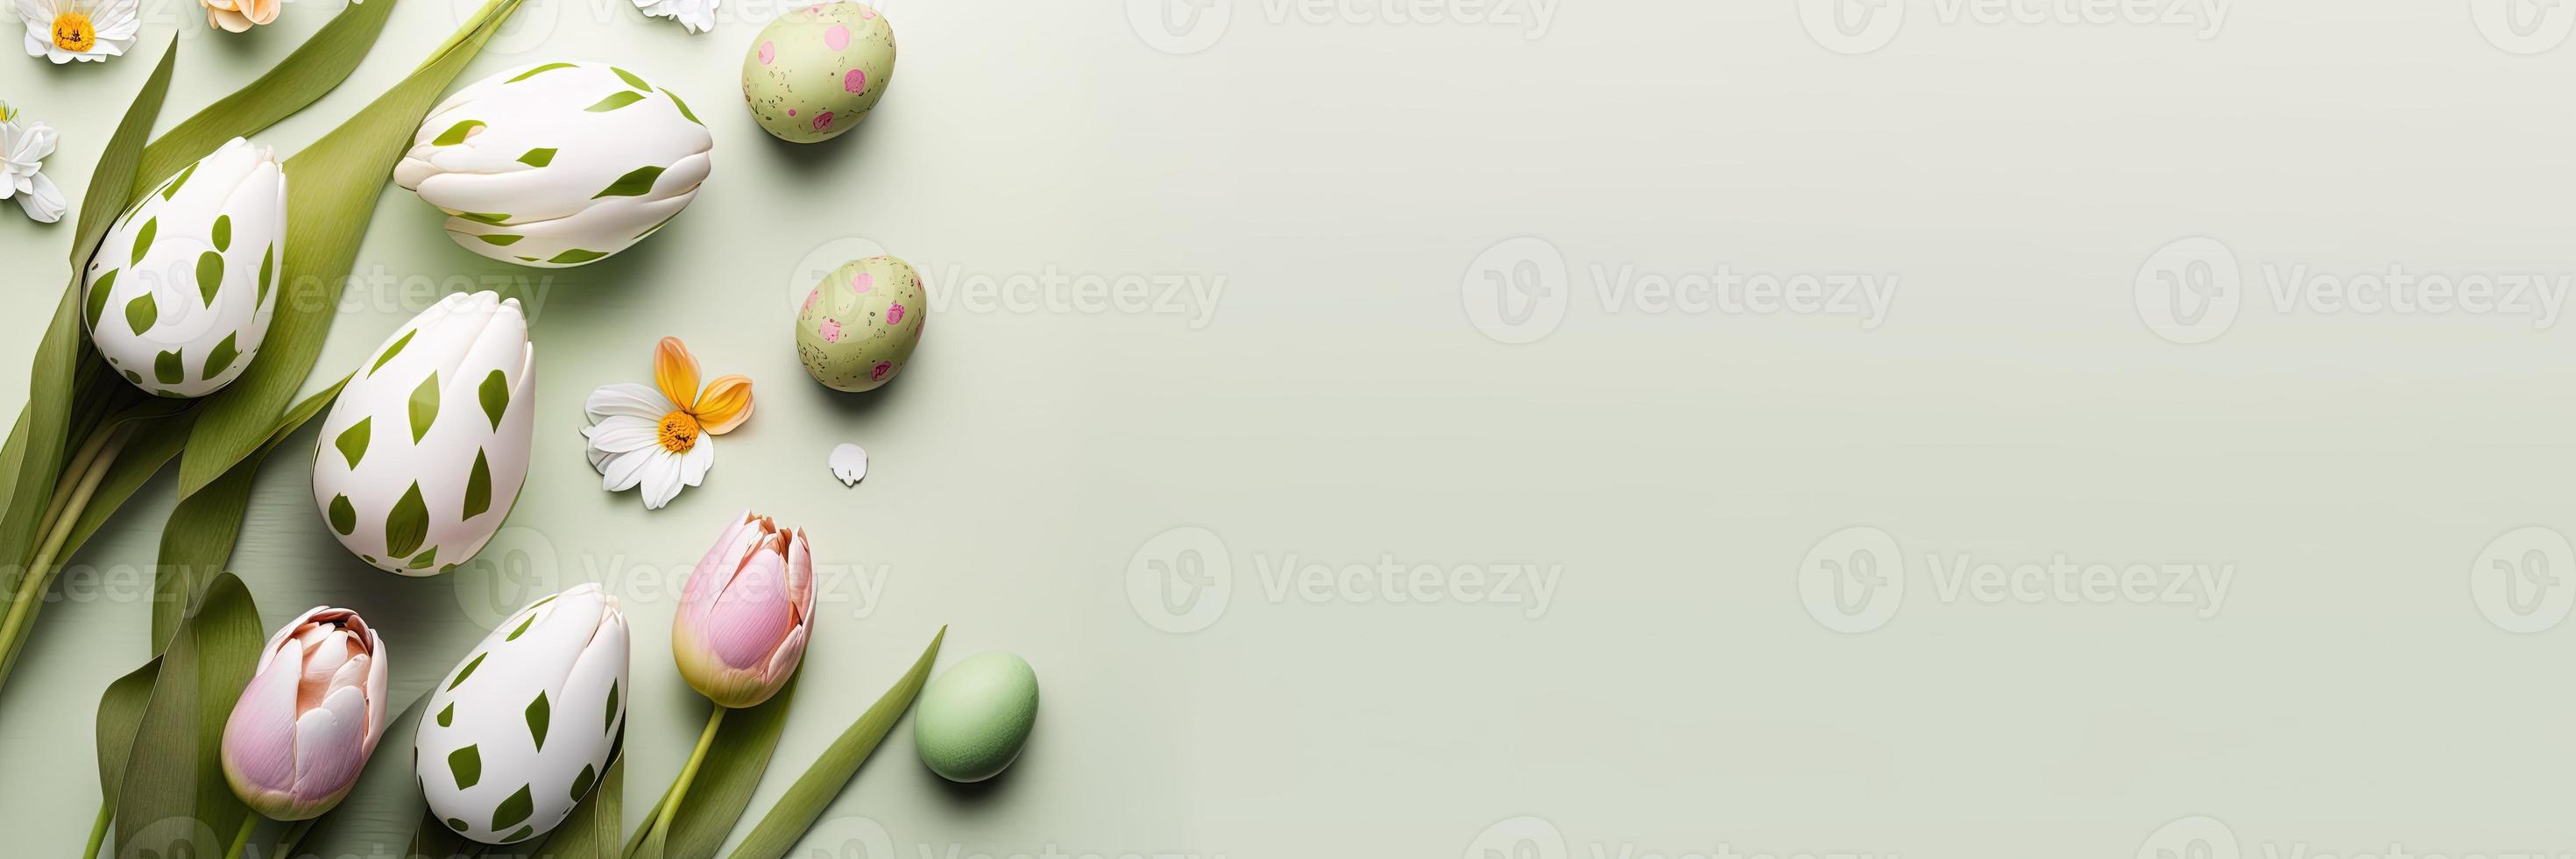 tulipas decoradas e ovos em um fundo verde suave para um banner de celebração da páscoa foto